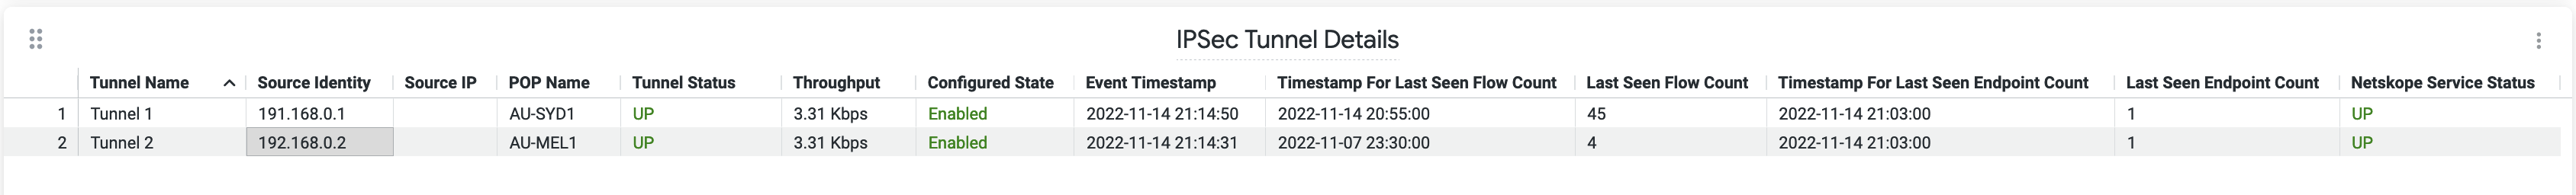 IPSec-Tunnel-Details-Netskope-DEM.png